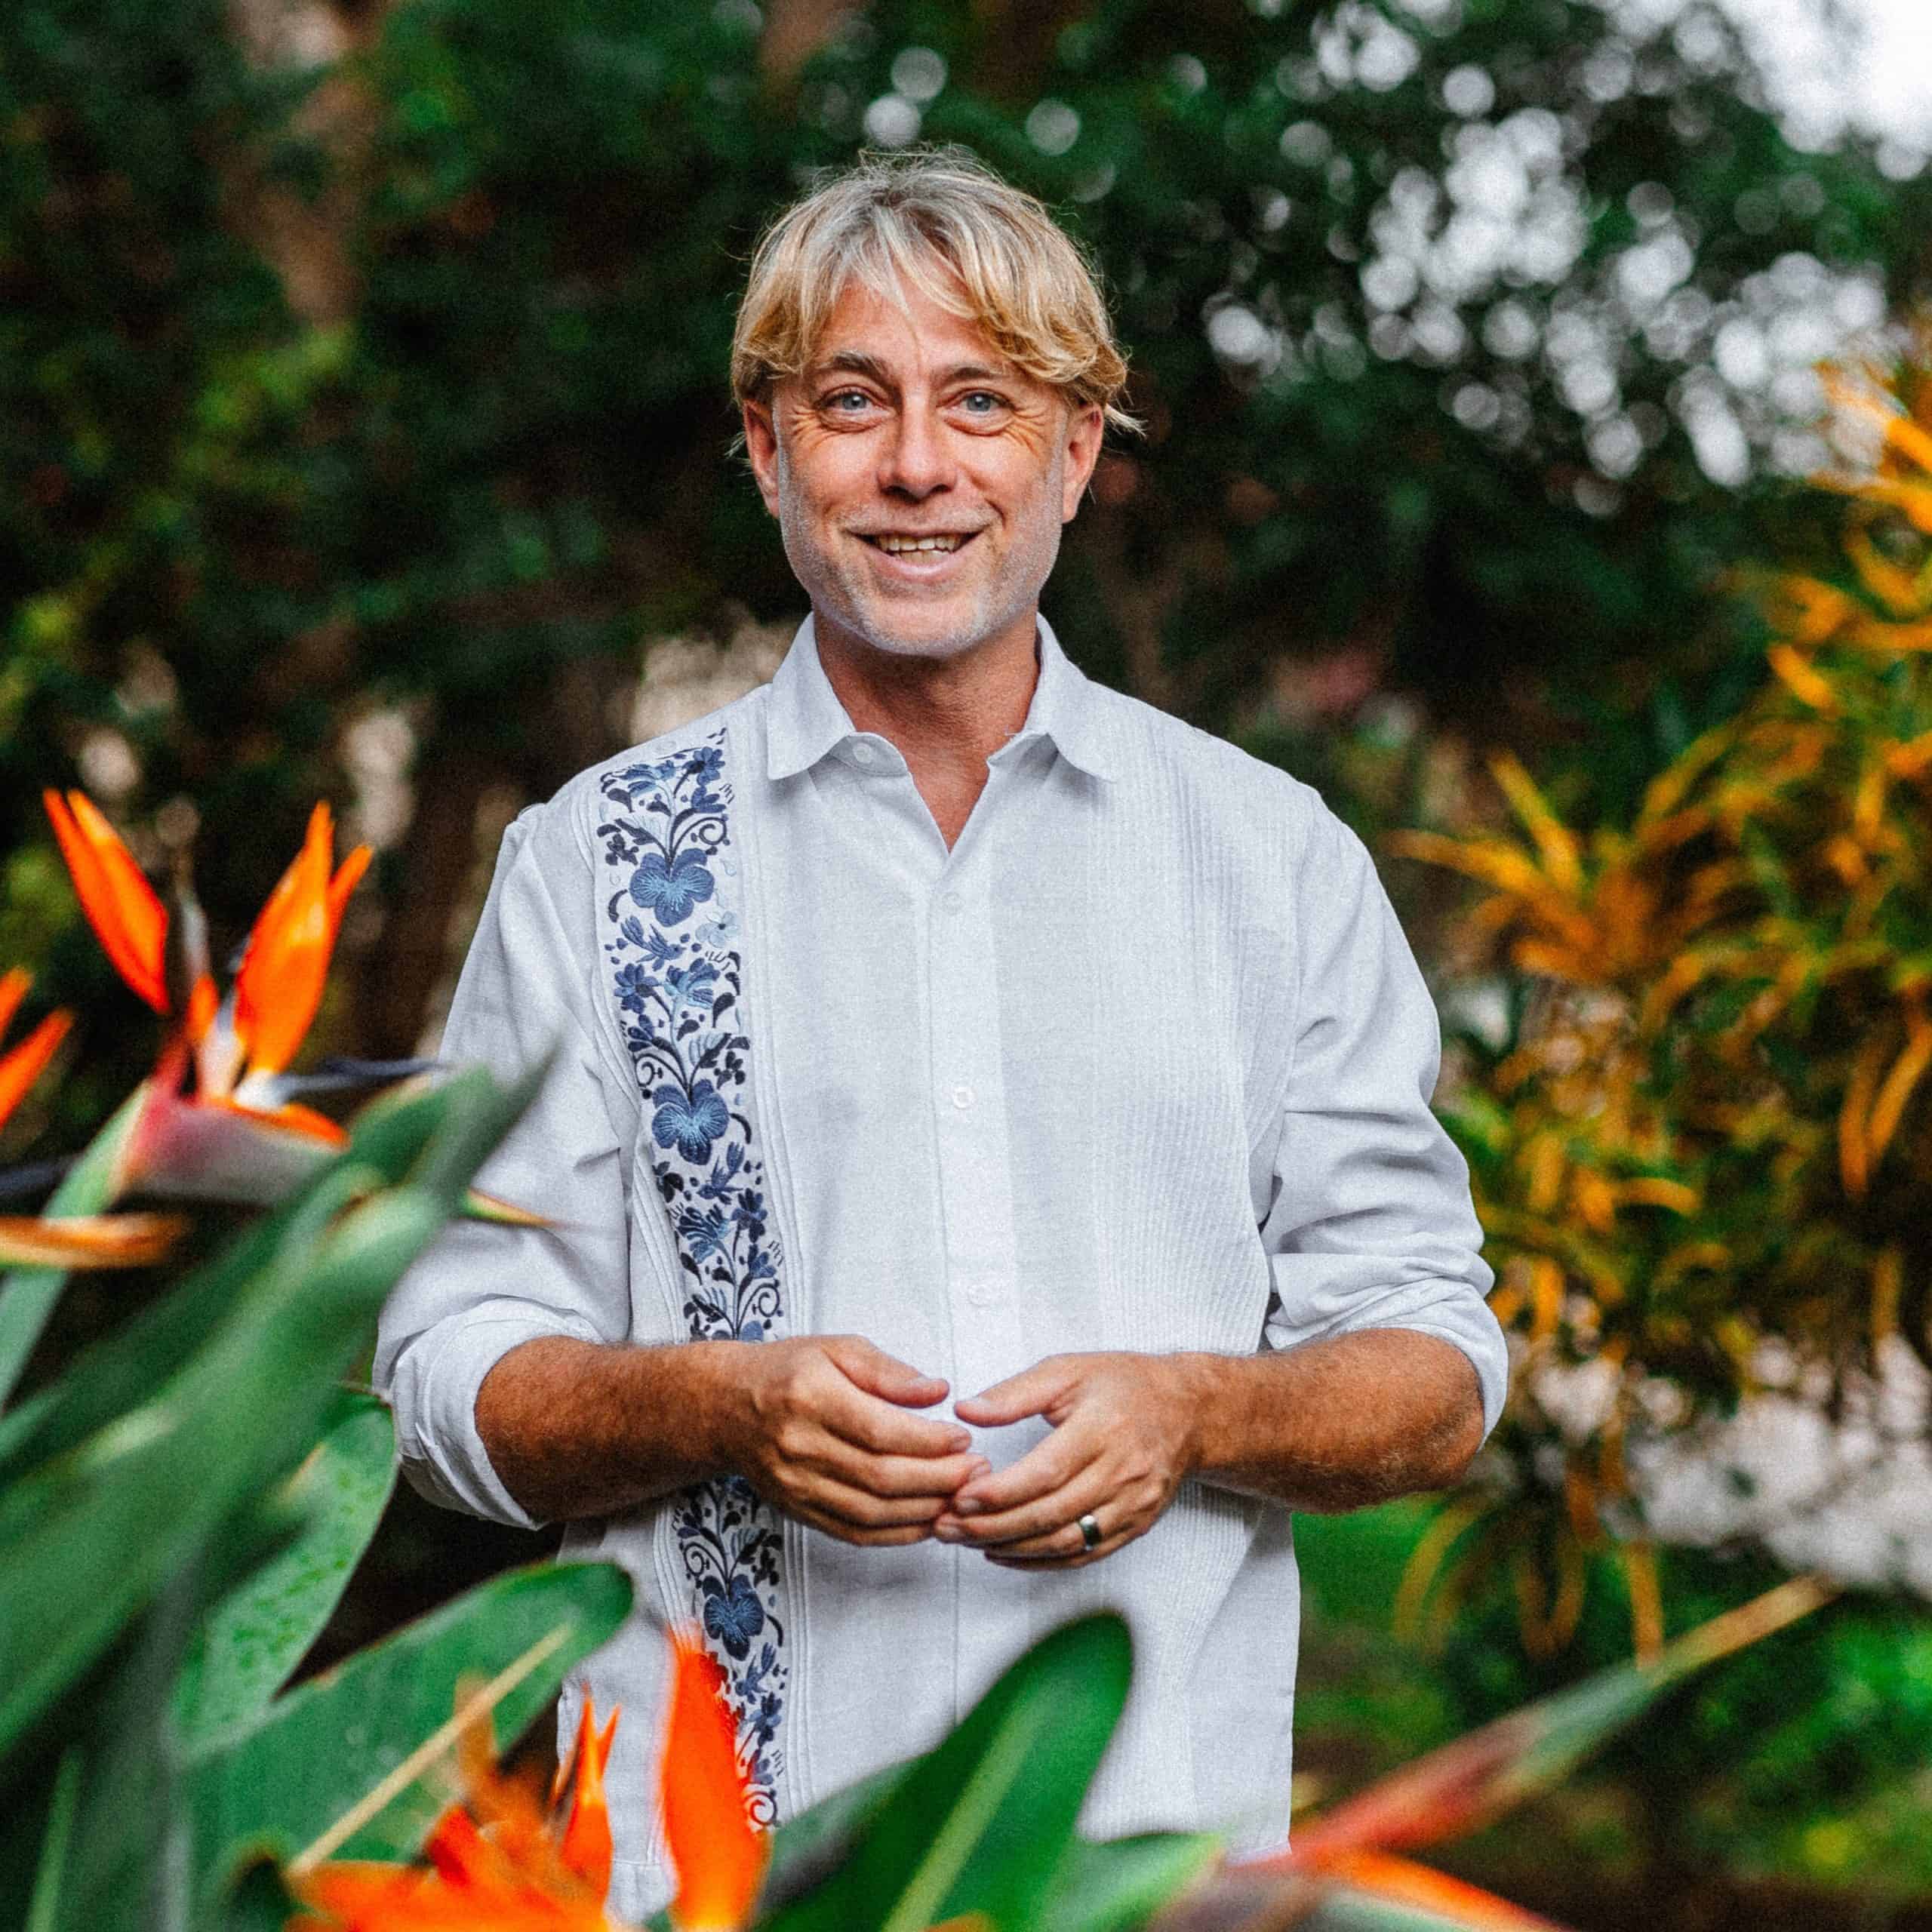 Portrait de Patrick Tourigny, co-fondateur, entouré de plantes luxuriantes.